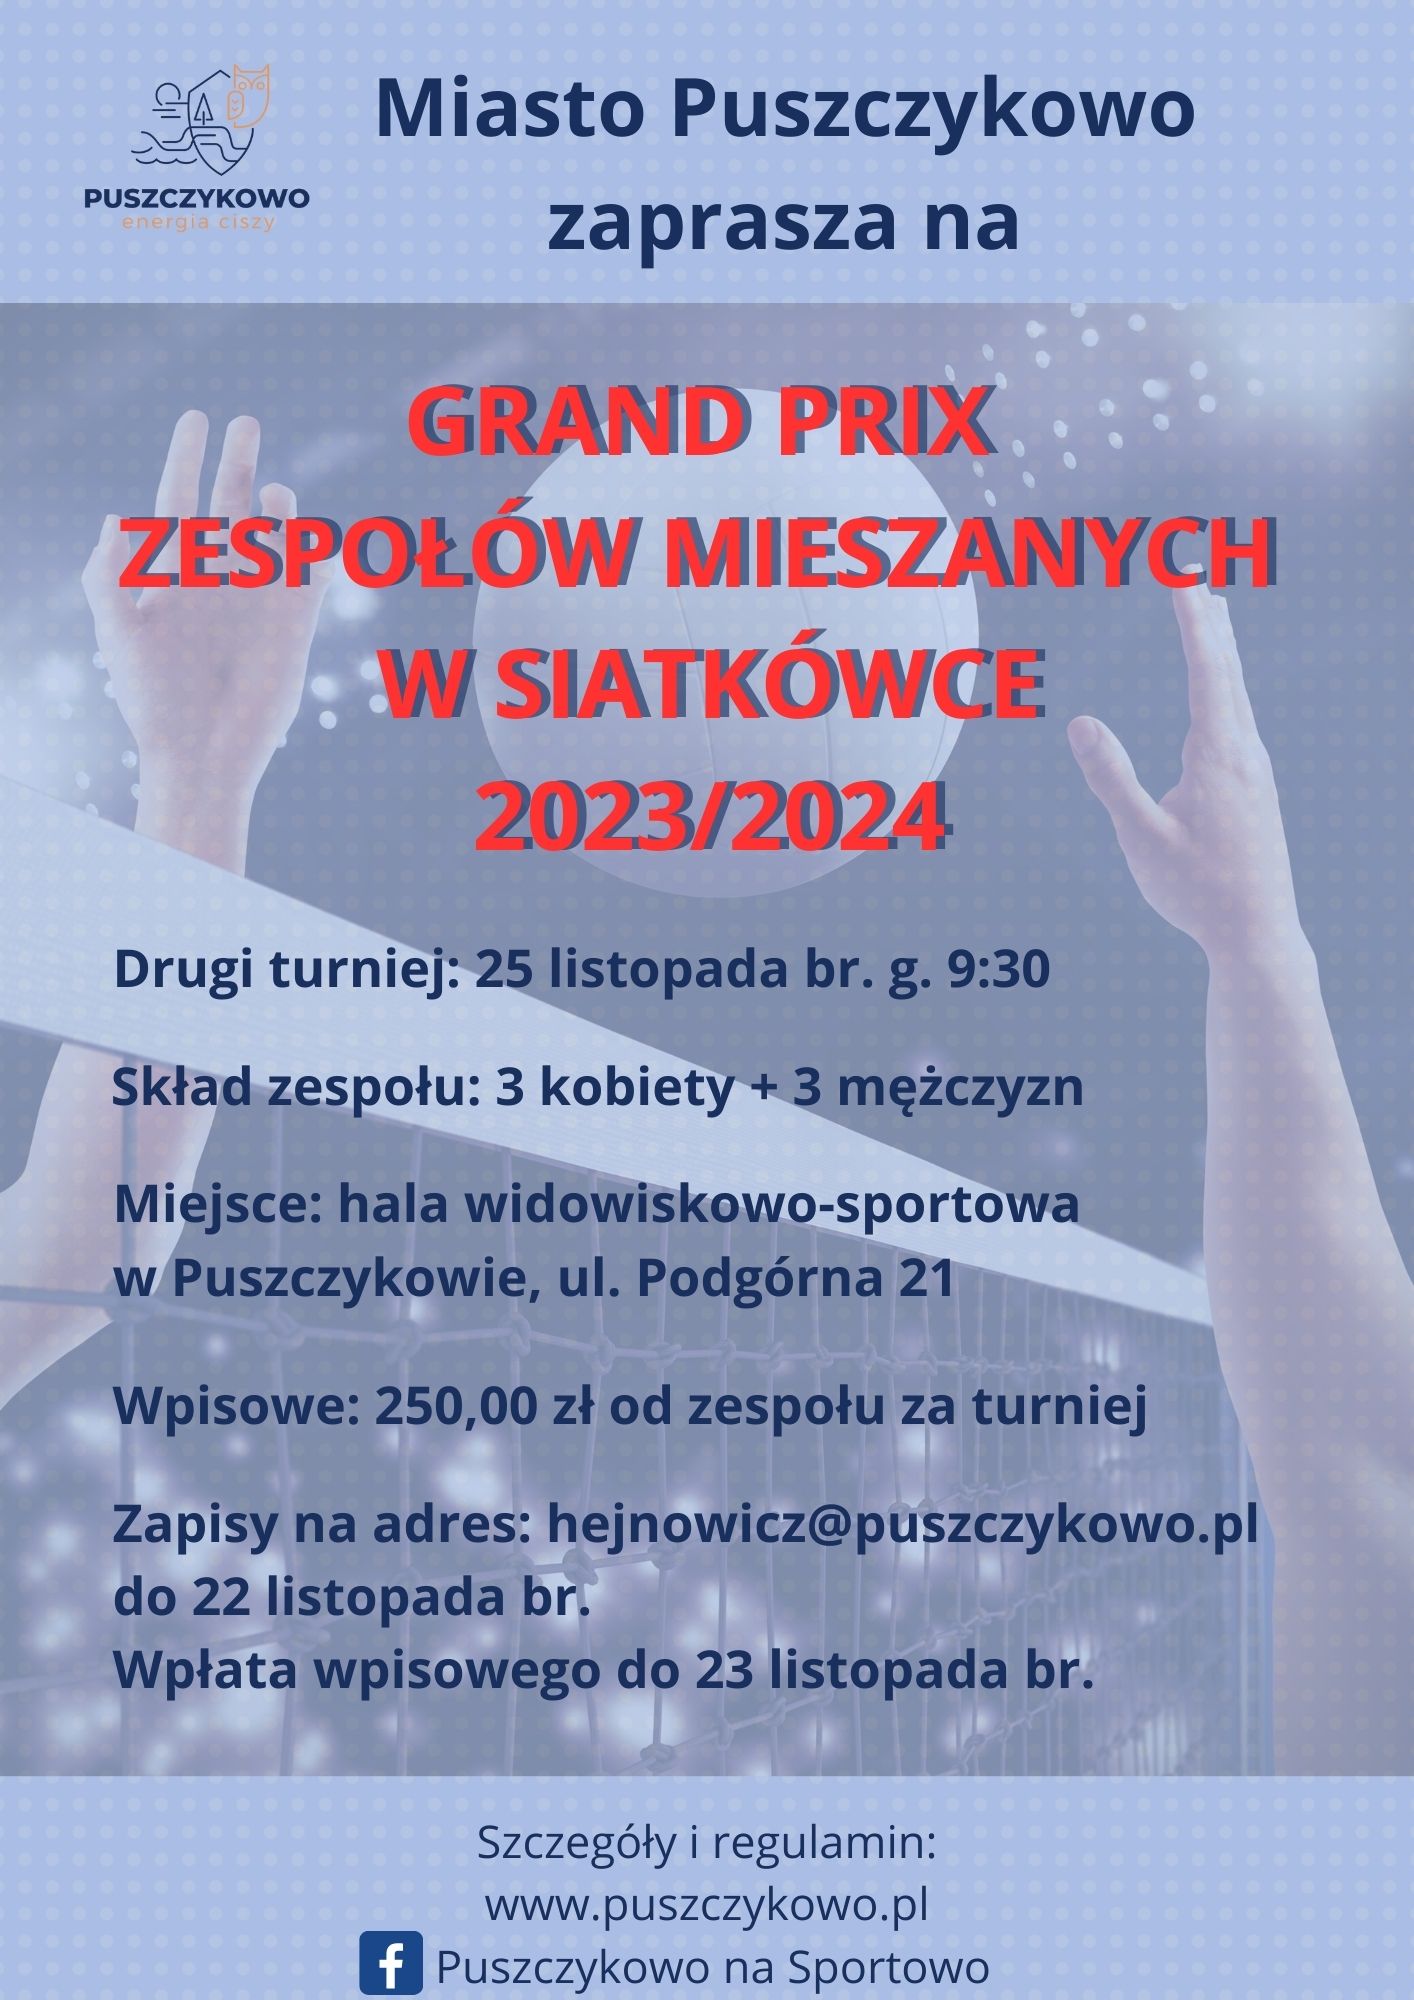 Zapraszamy na drugi turniej w ramach Grand Prix Zespołów Mieszanych w siatkówce - sezon 2023/2024. 